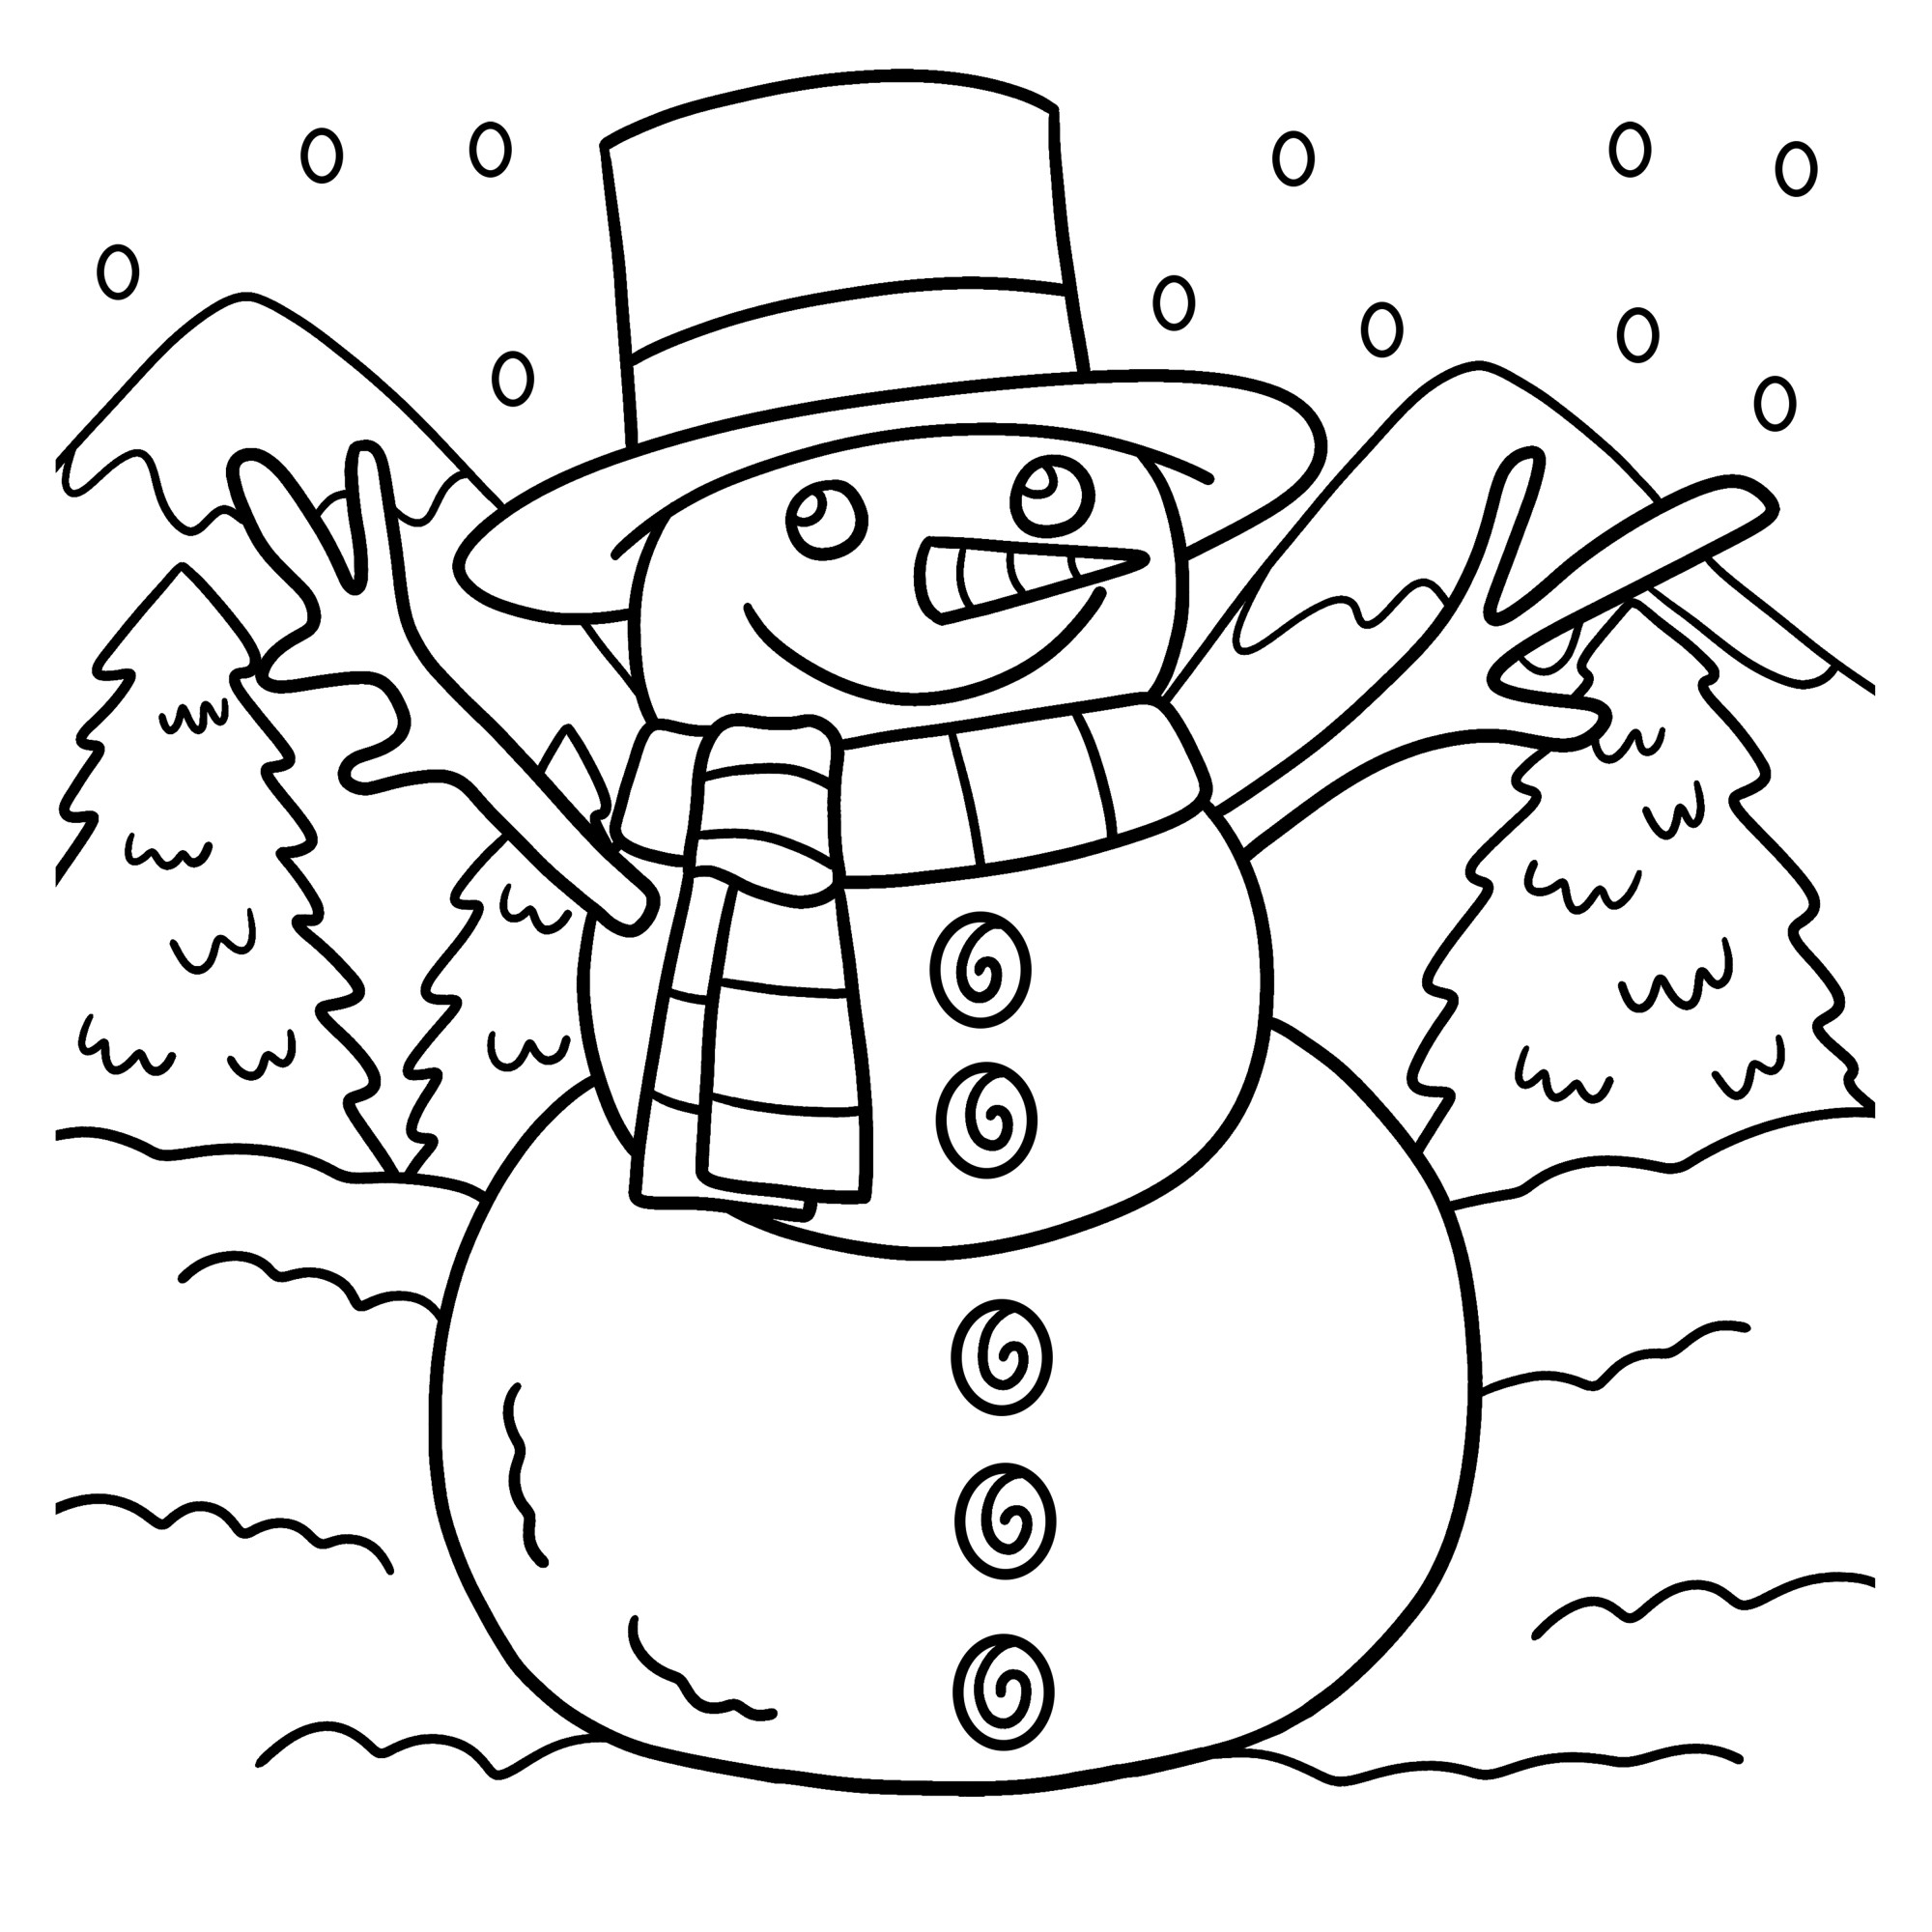 Раскраска для детей: большой снеговик в шляпе